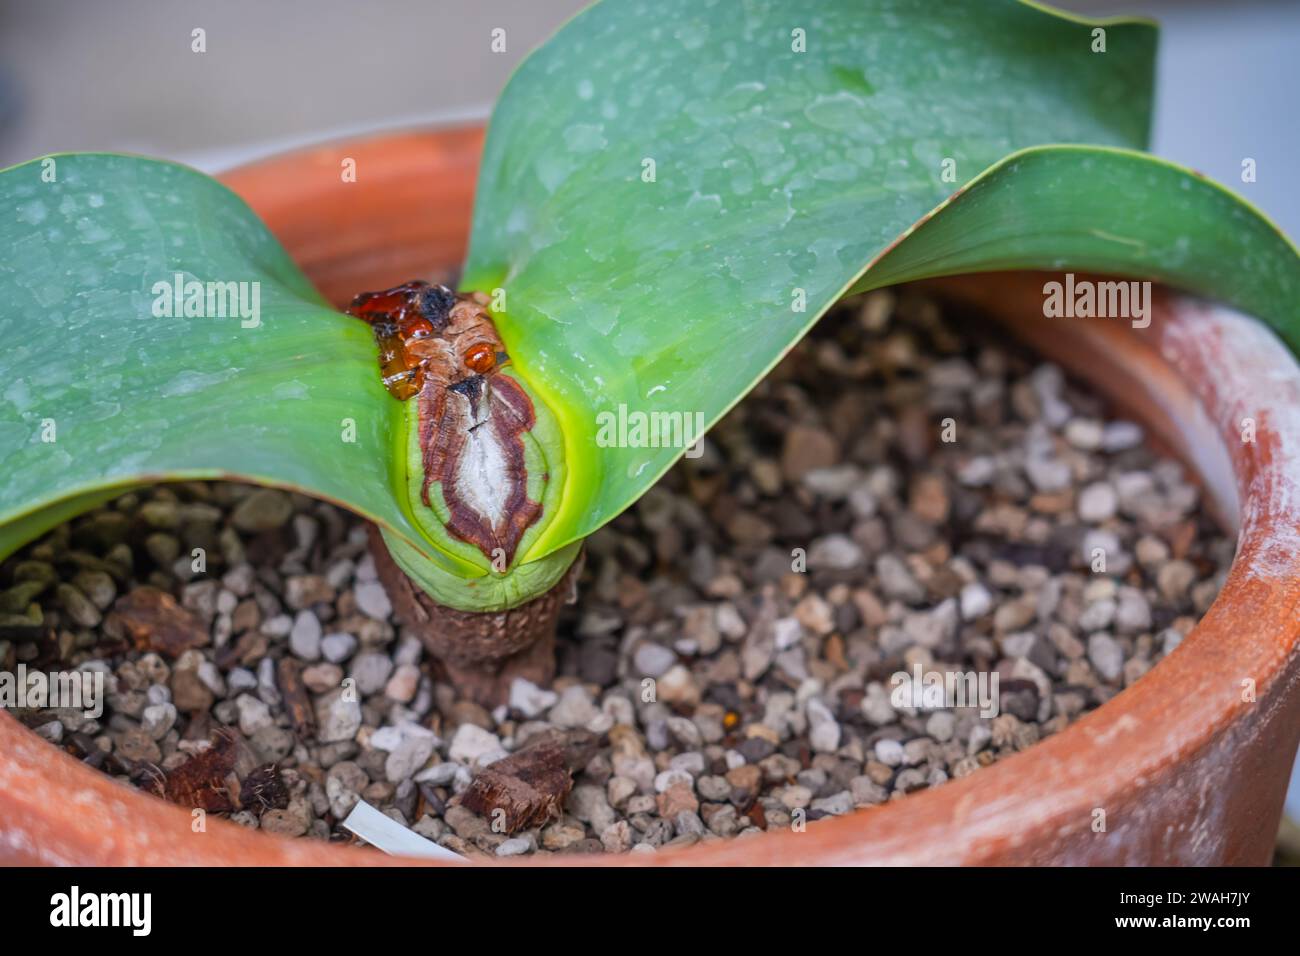 Welwitschia mirabilis, ancient endemic desert plant on pot. Stock Photo